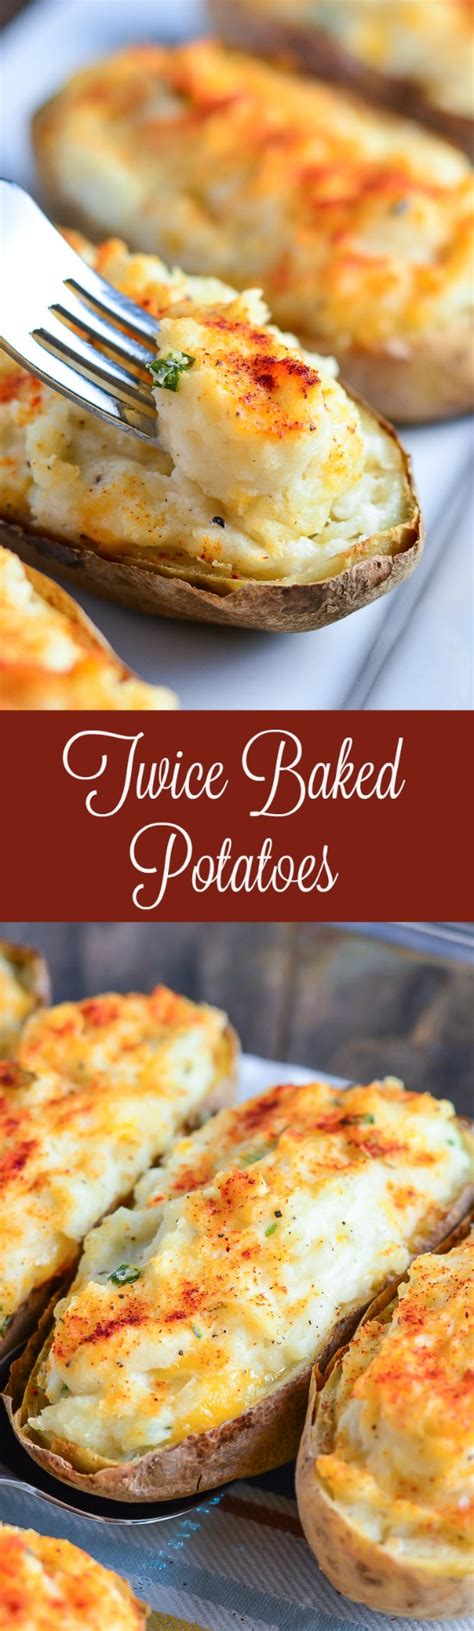 the-best-twice-baked-potatoes-garnish-glaze image